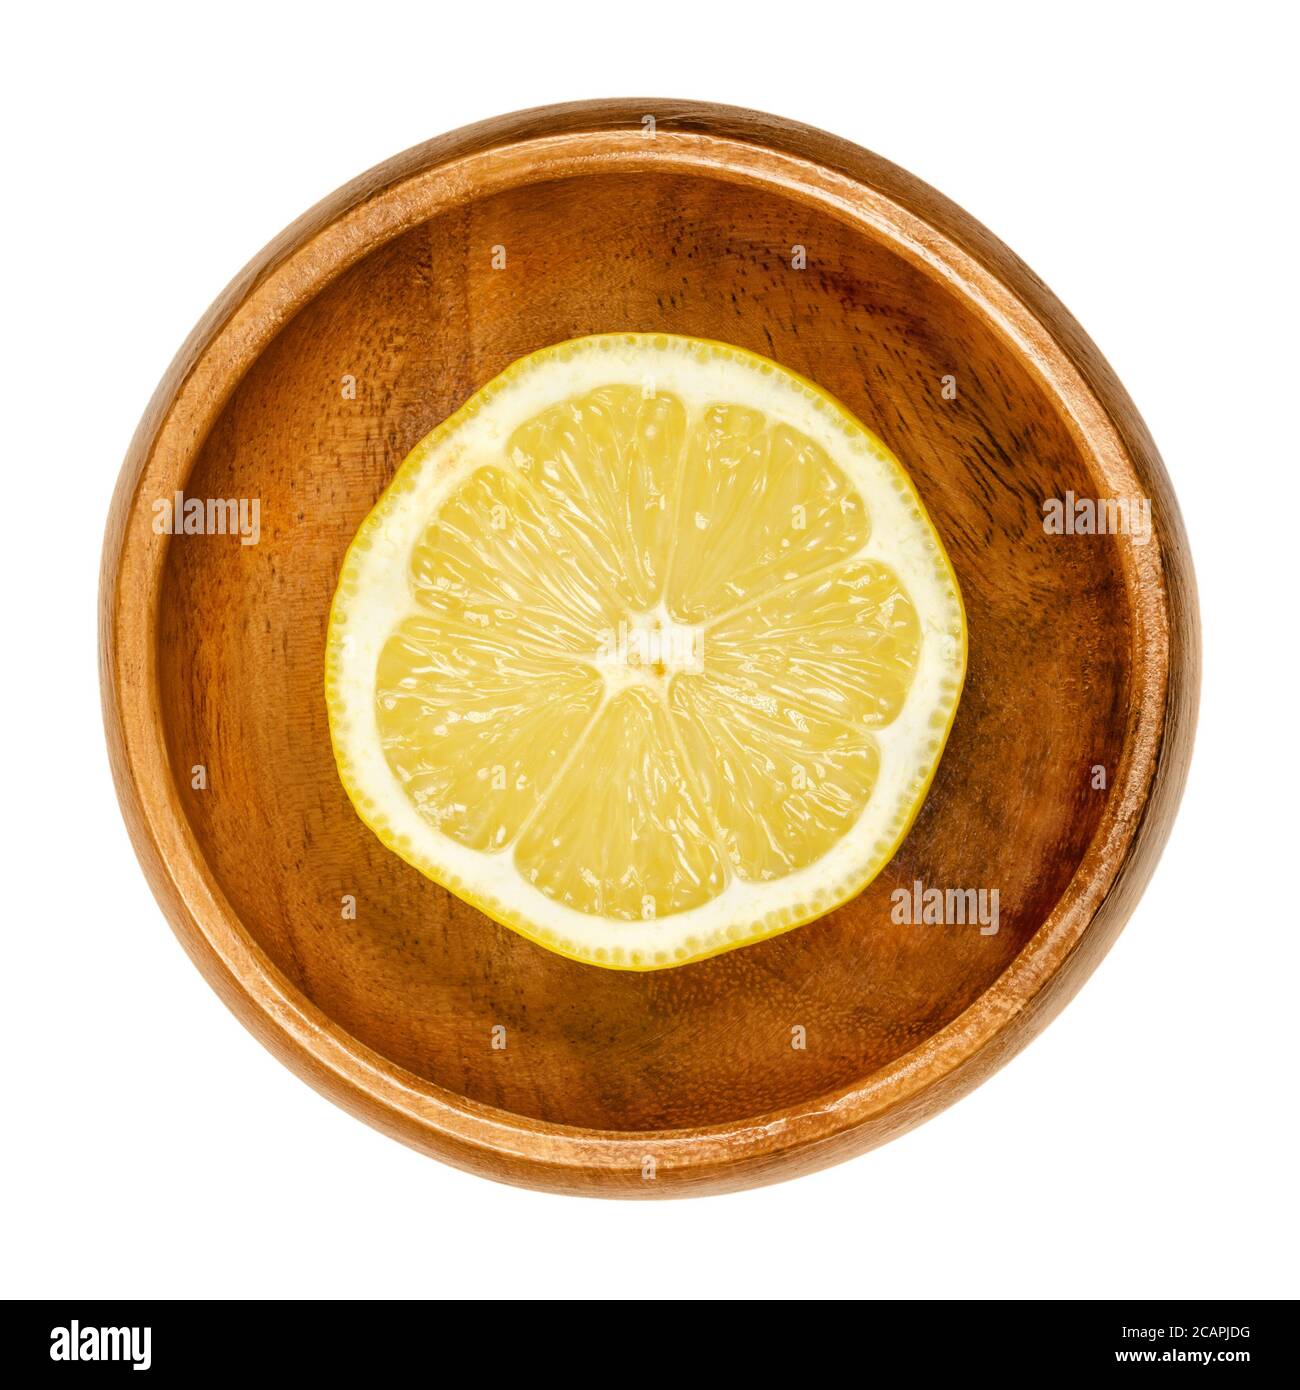 Zitronenhälfte in Holzschale. Frisch geschnittene reife gelbe essbare Zitrusfrüchte. Citrus limon. Zitronensaft wird für kulinarische Zwecke und zur Reinigung verwendet. Stockfoto